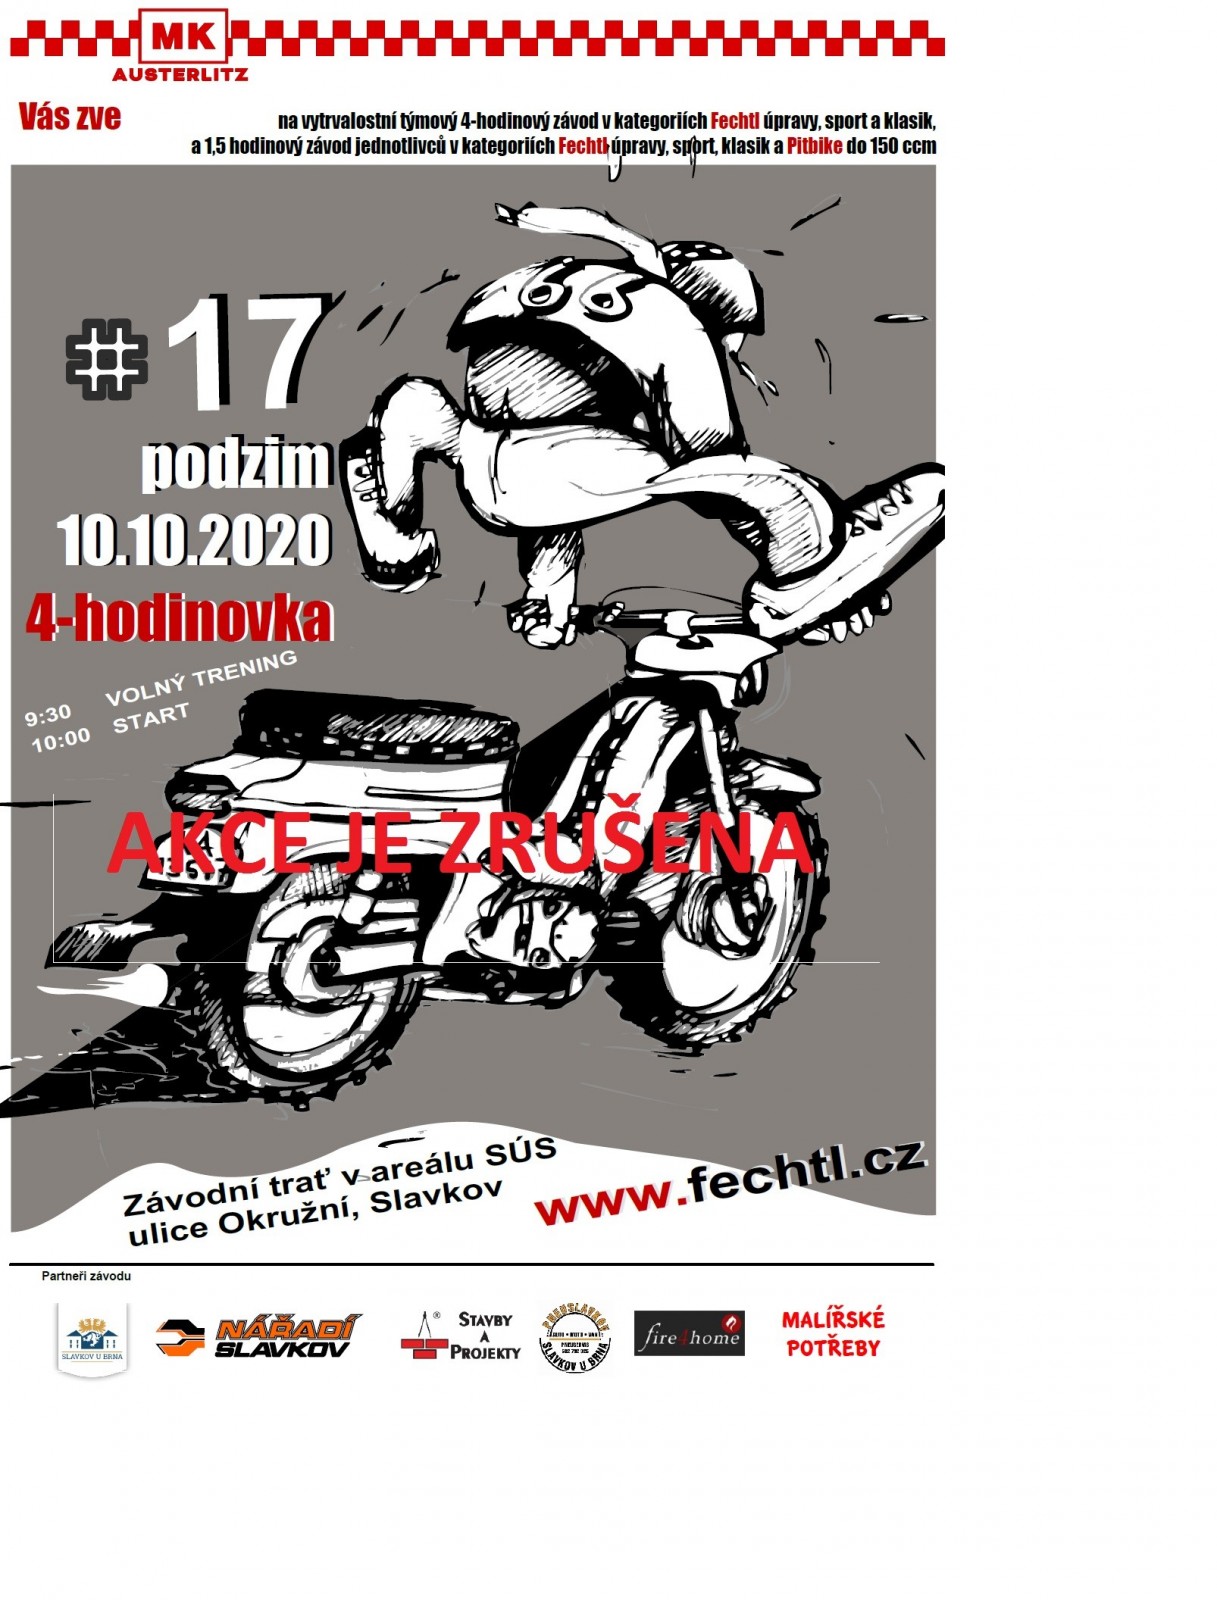 ZRUŠENO - AFC17 - motocrossový závodá týmů a jednotlivců